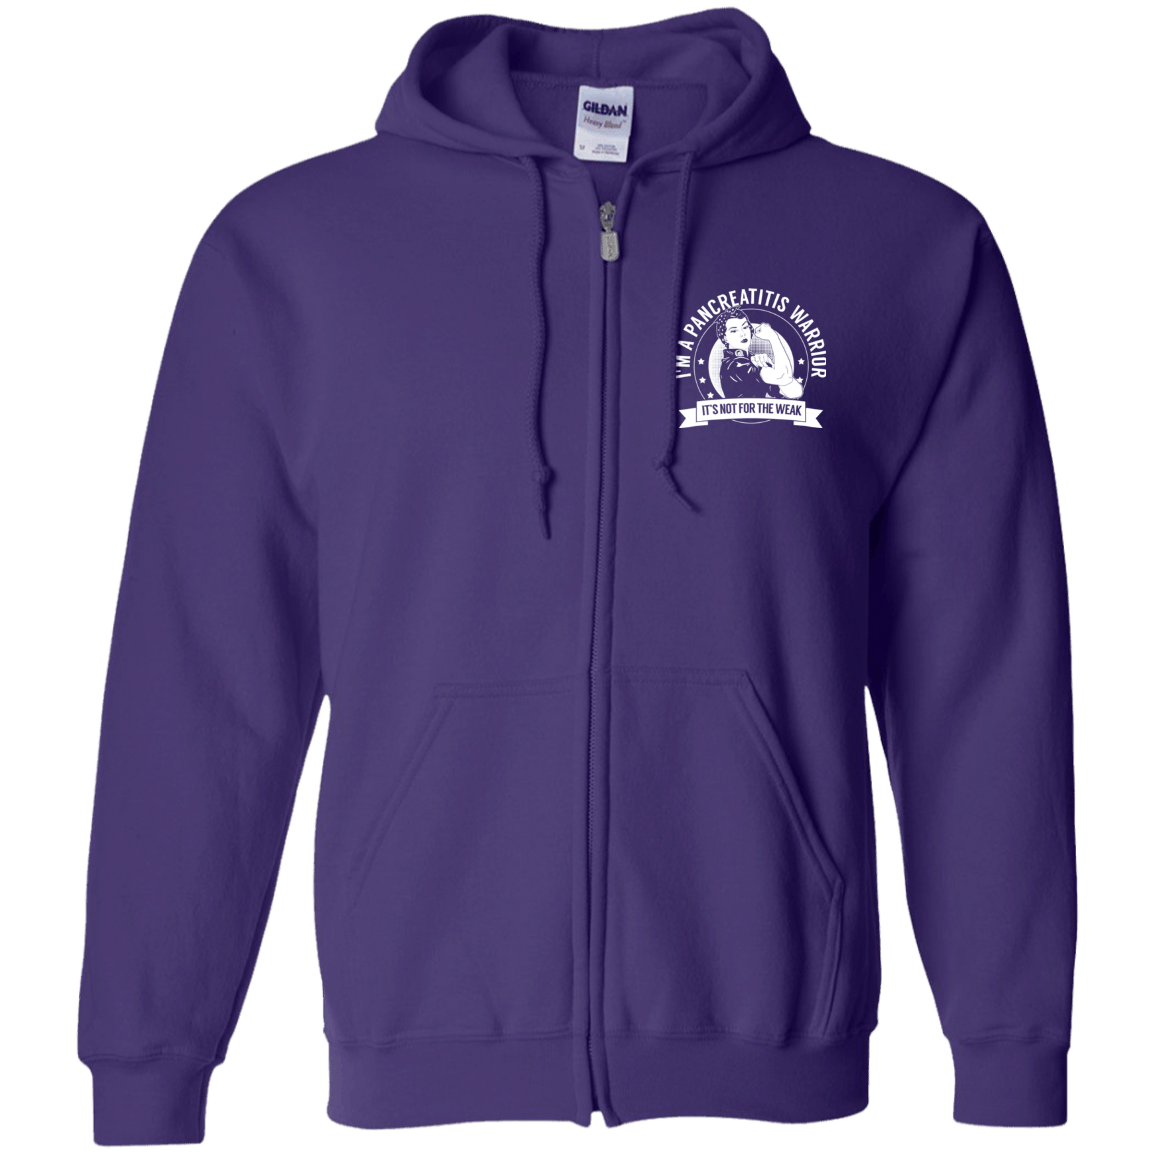 Pancreatitis Warrior NFTW Zip Up Hooded Sweatshirt - The Unchargeables